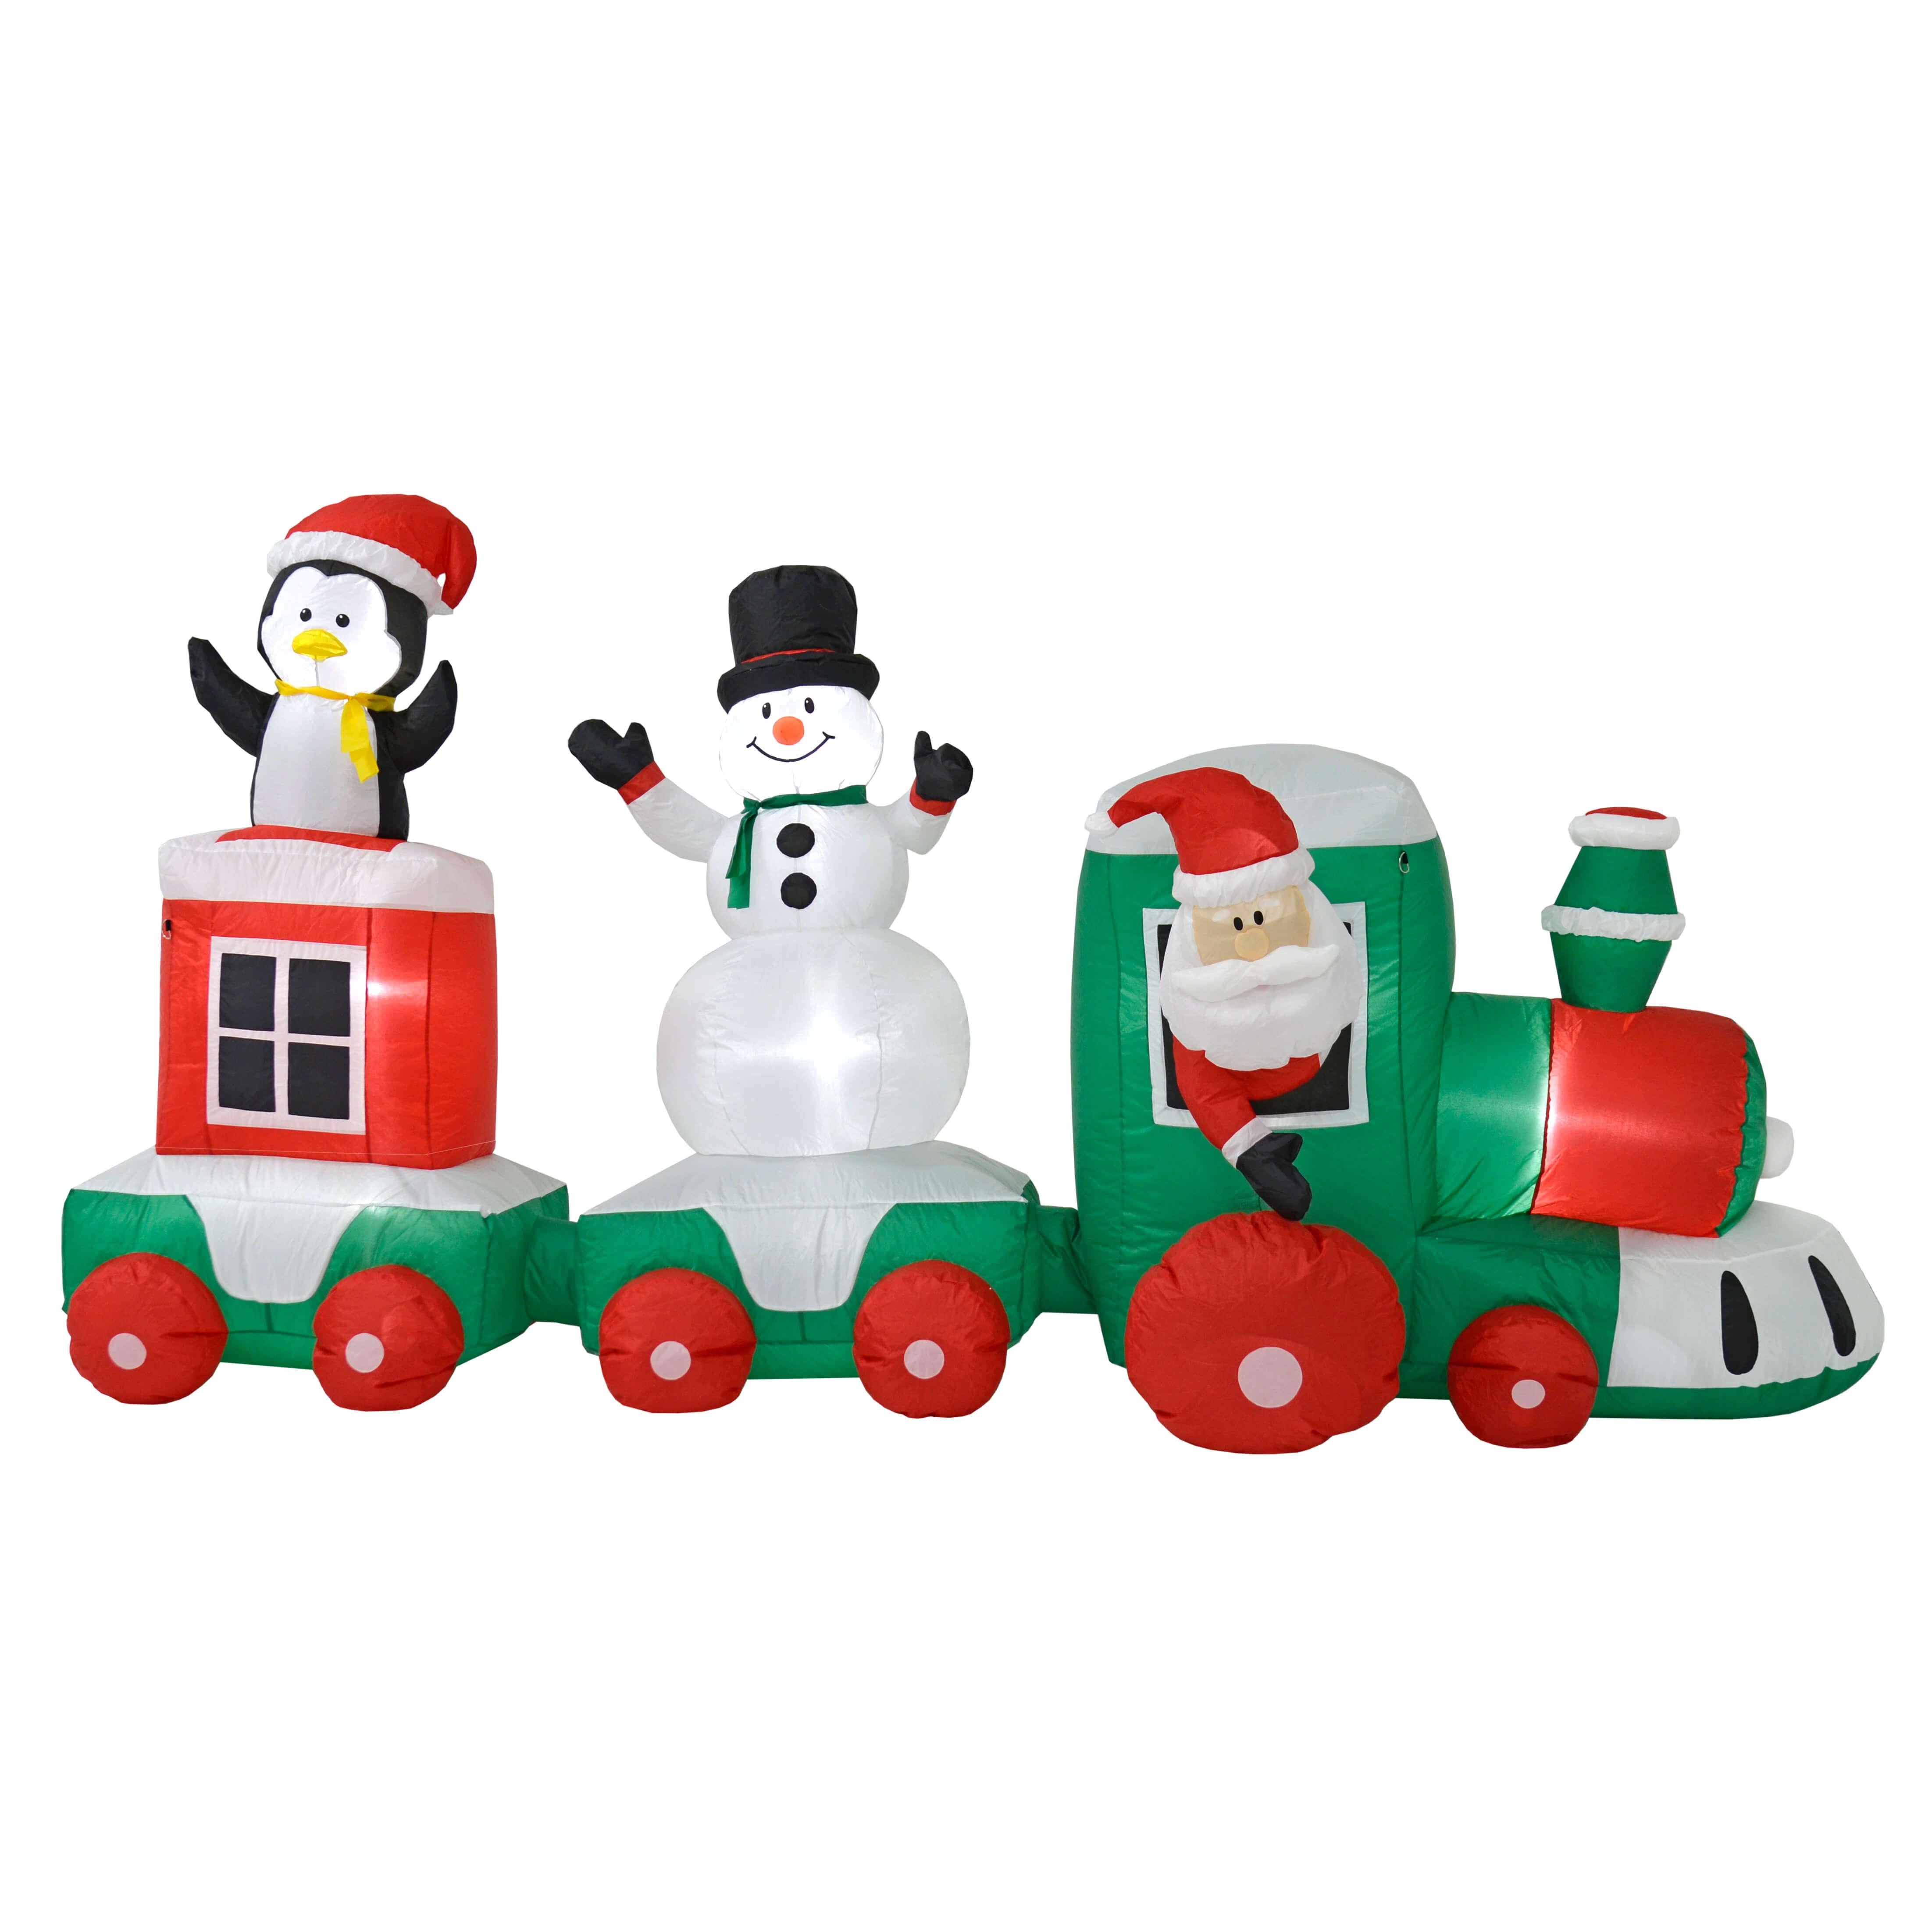 Mr Crimbo 11ft Light Up Inflatable Train Christmas Decoration - MrCrimbo.co.uk -XS7213 - -